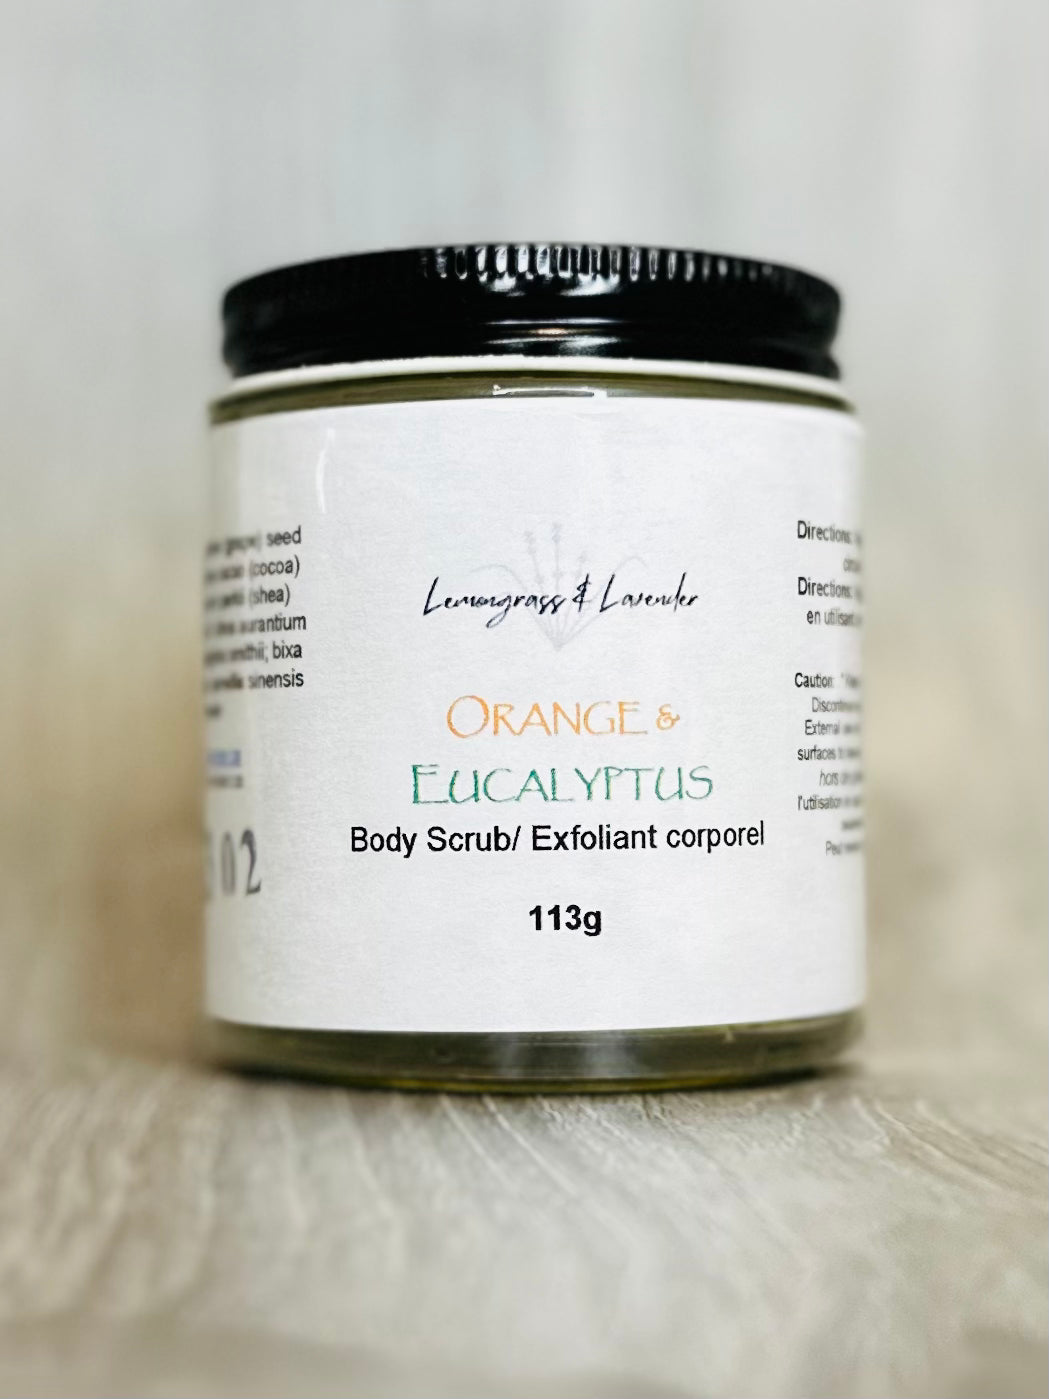 Orange & Eucalyptus Body Scrub/exfoliant corporel